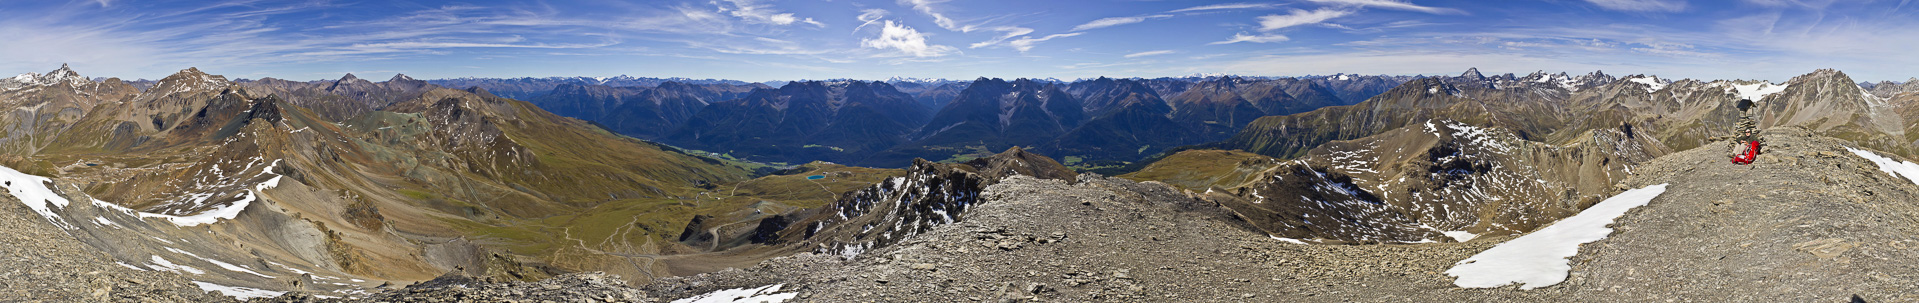 Gipfelpanorama mit Fluchthorn, Weißkugel, Ortler, Bernina, Linard und Co..